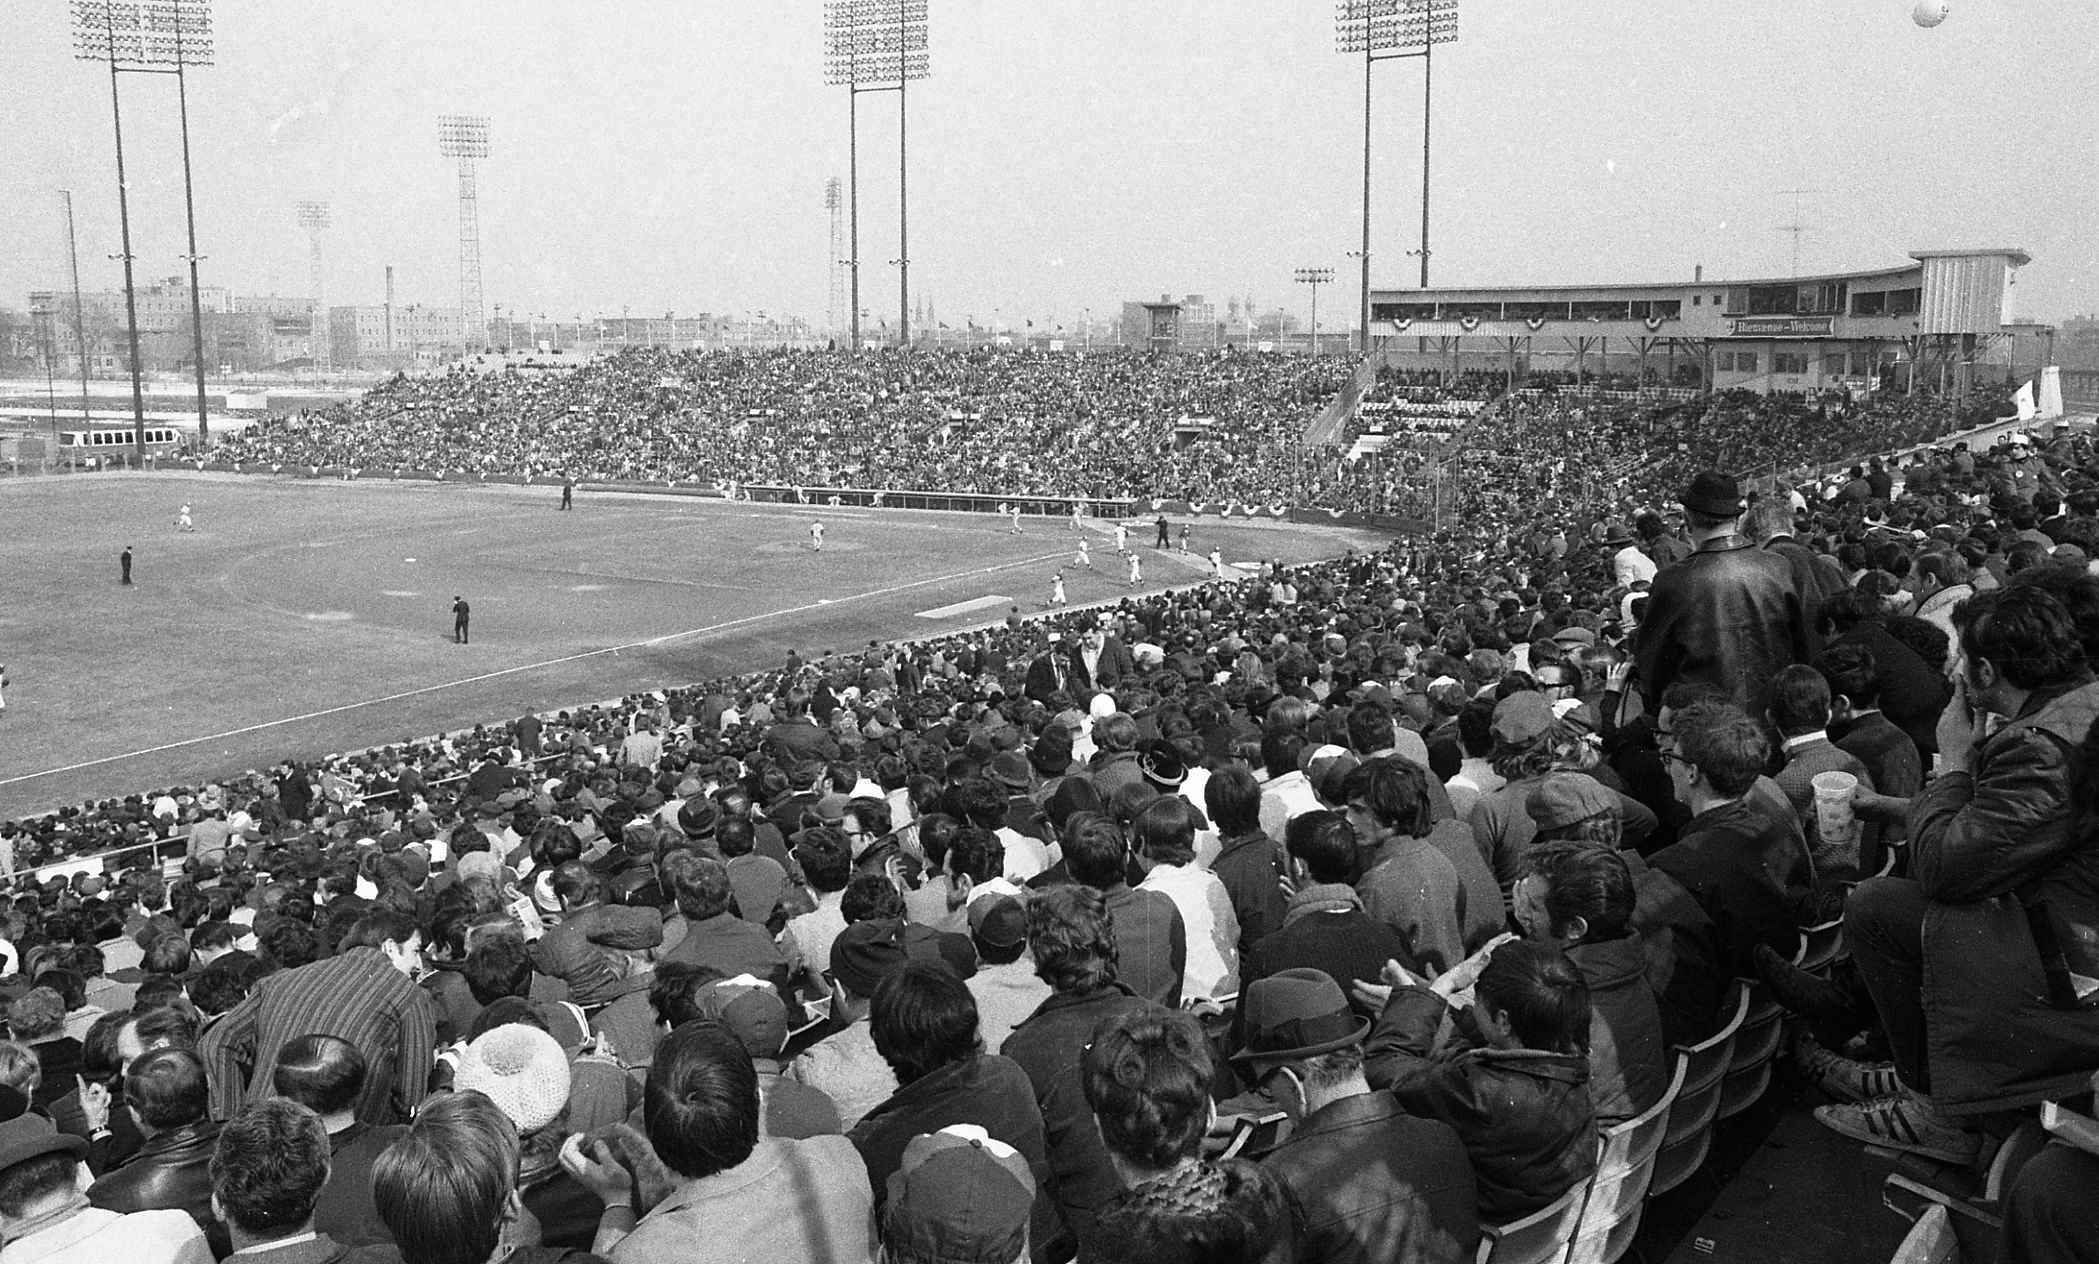 Photographie du stade et de la foule assistant à un match de baseball.